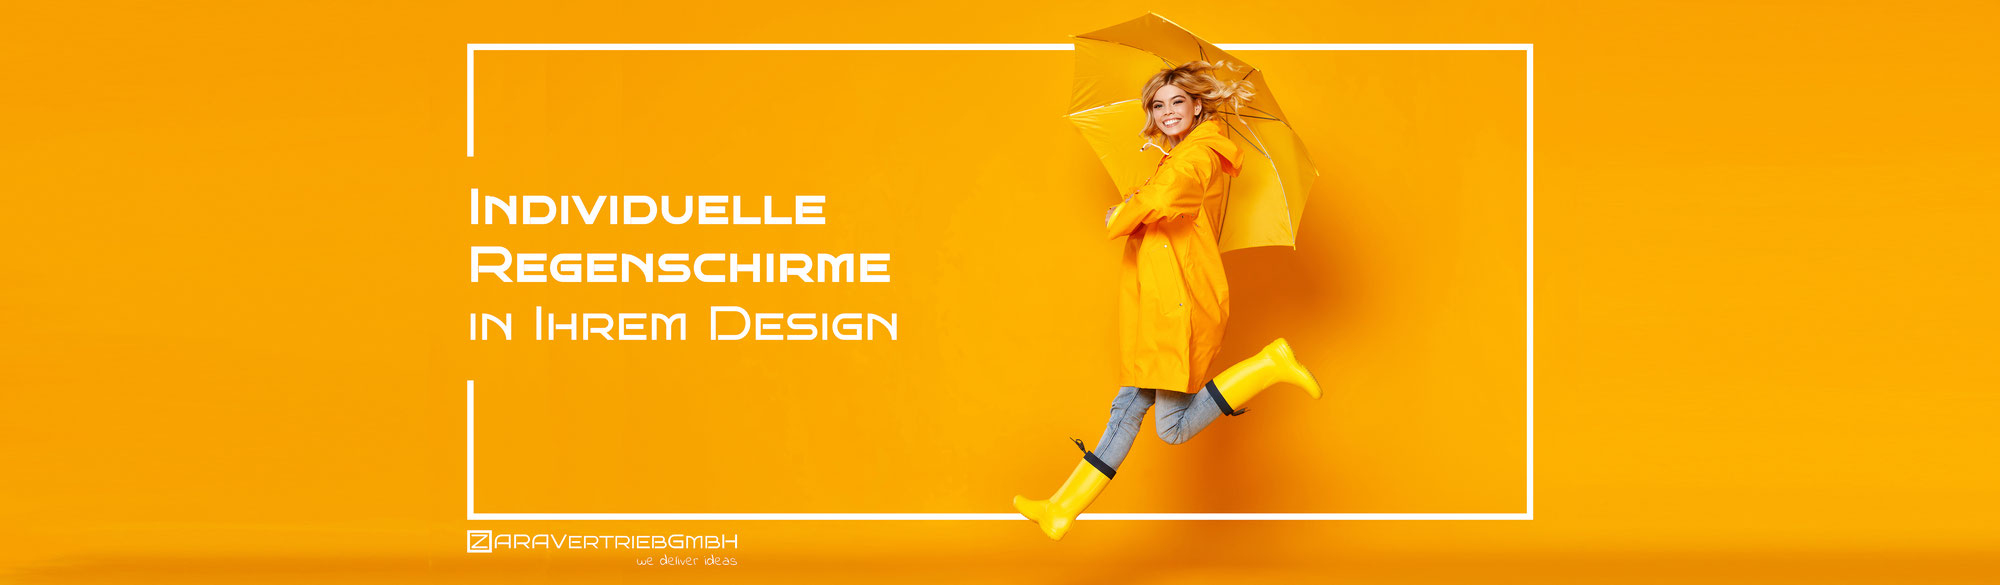 Custom-Made Regenschirme